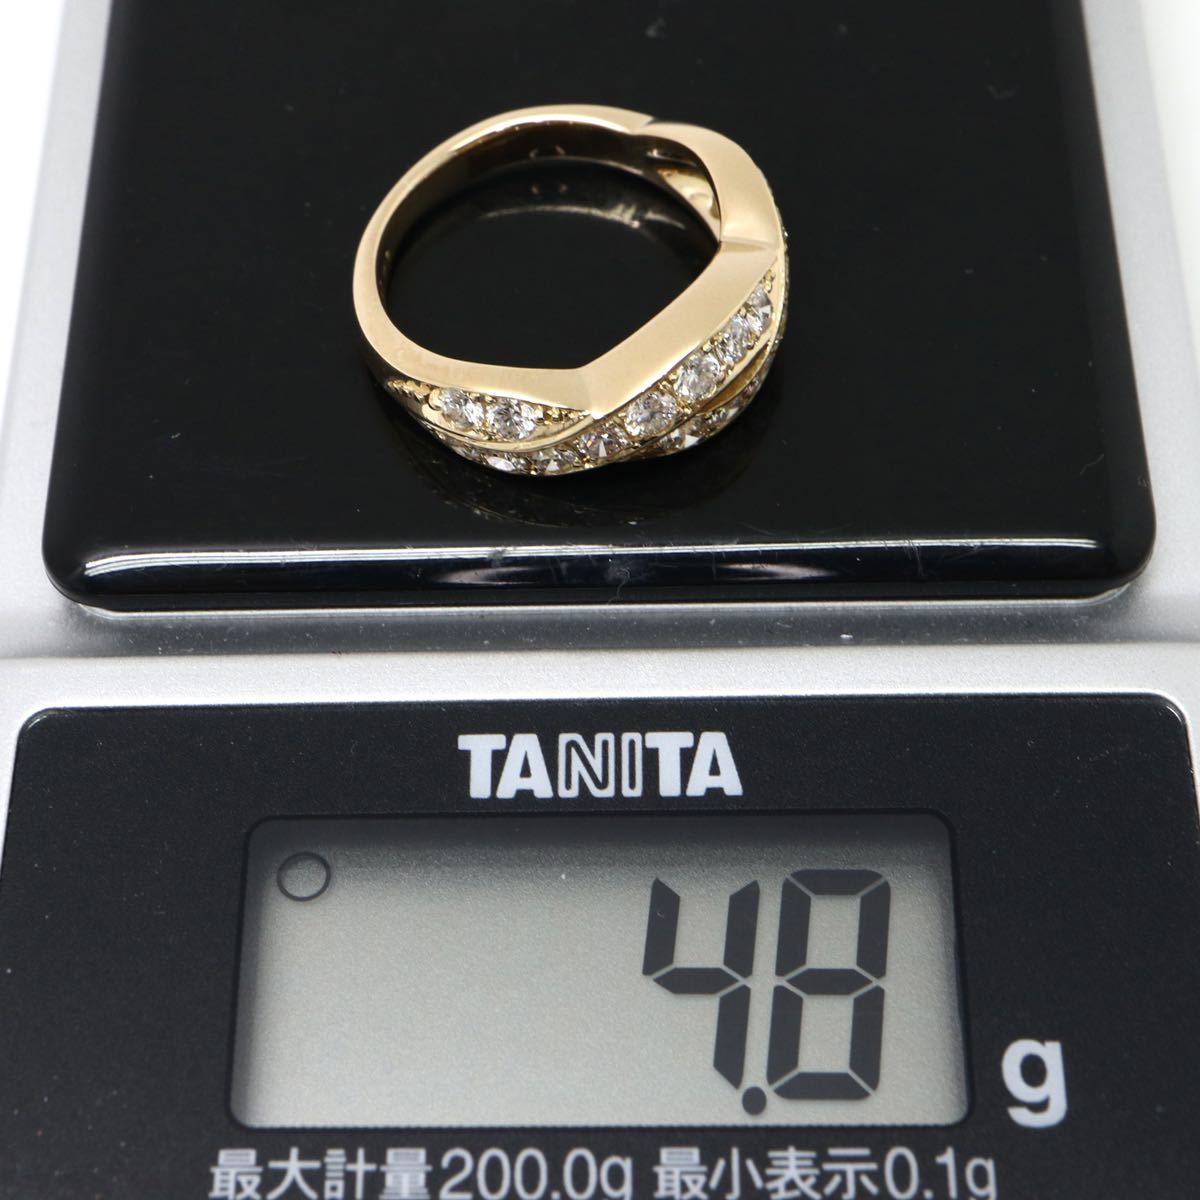 新品仕上げ済み!!◆K18 天然ダイヤモンドリング◆M 4.8g 8号 0.80ct diamond ring 指輪 jewelry pave EC9_画像9